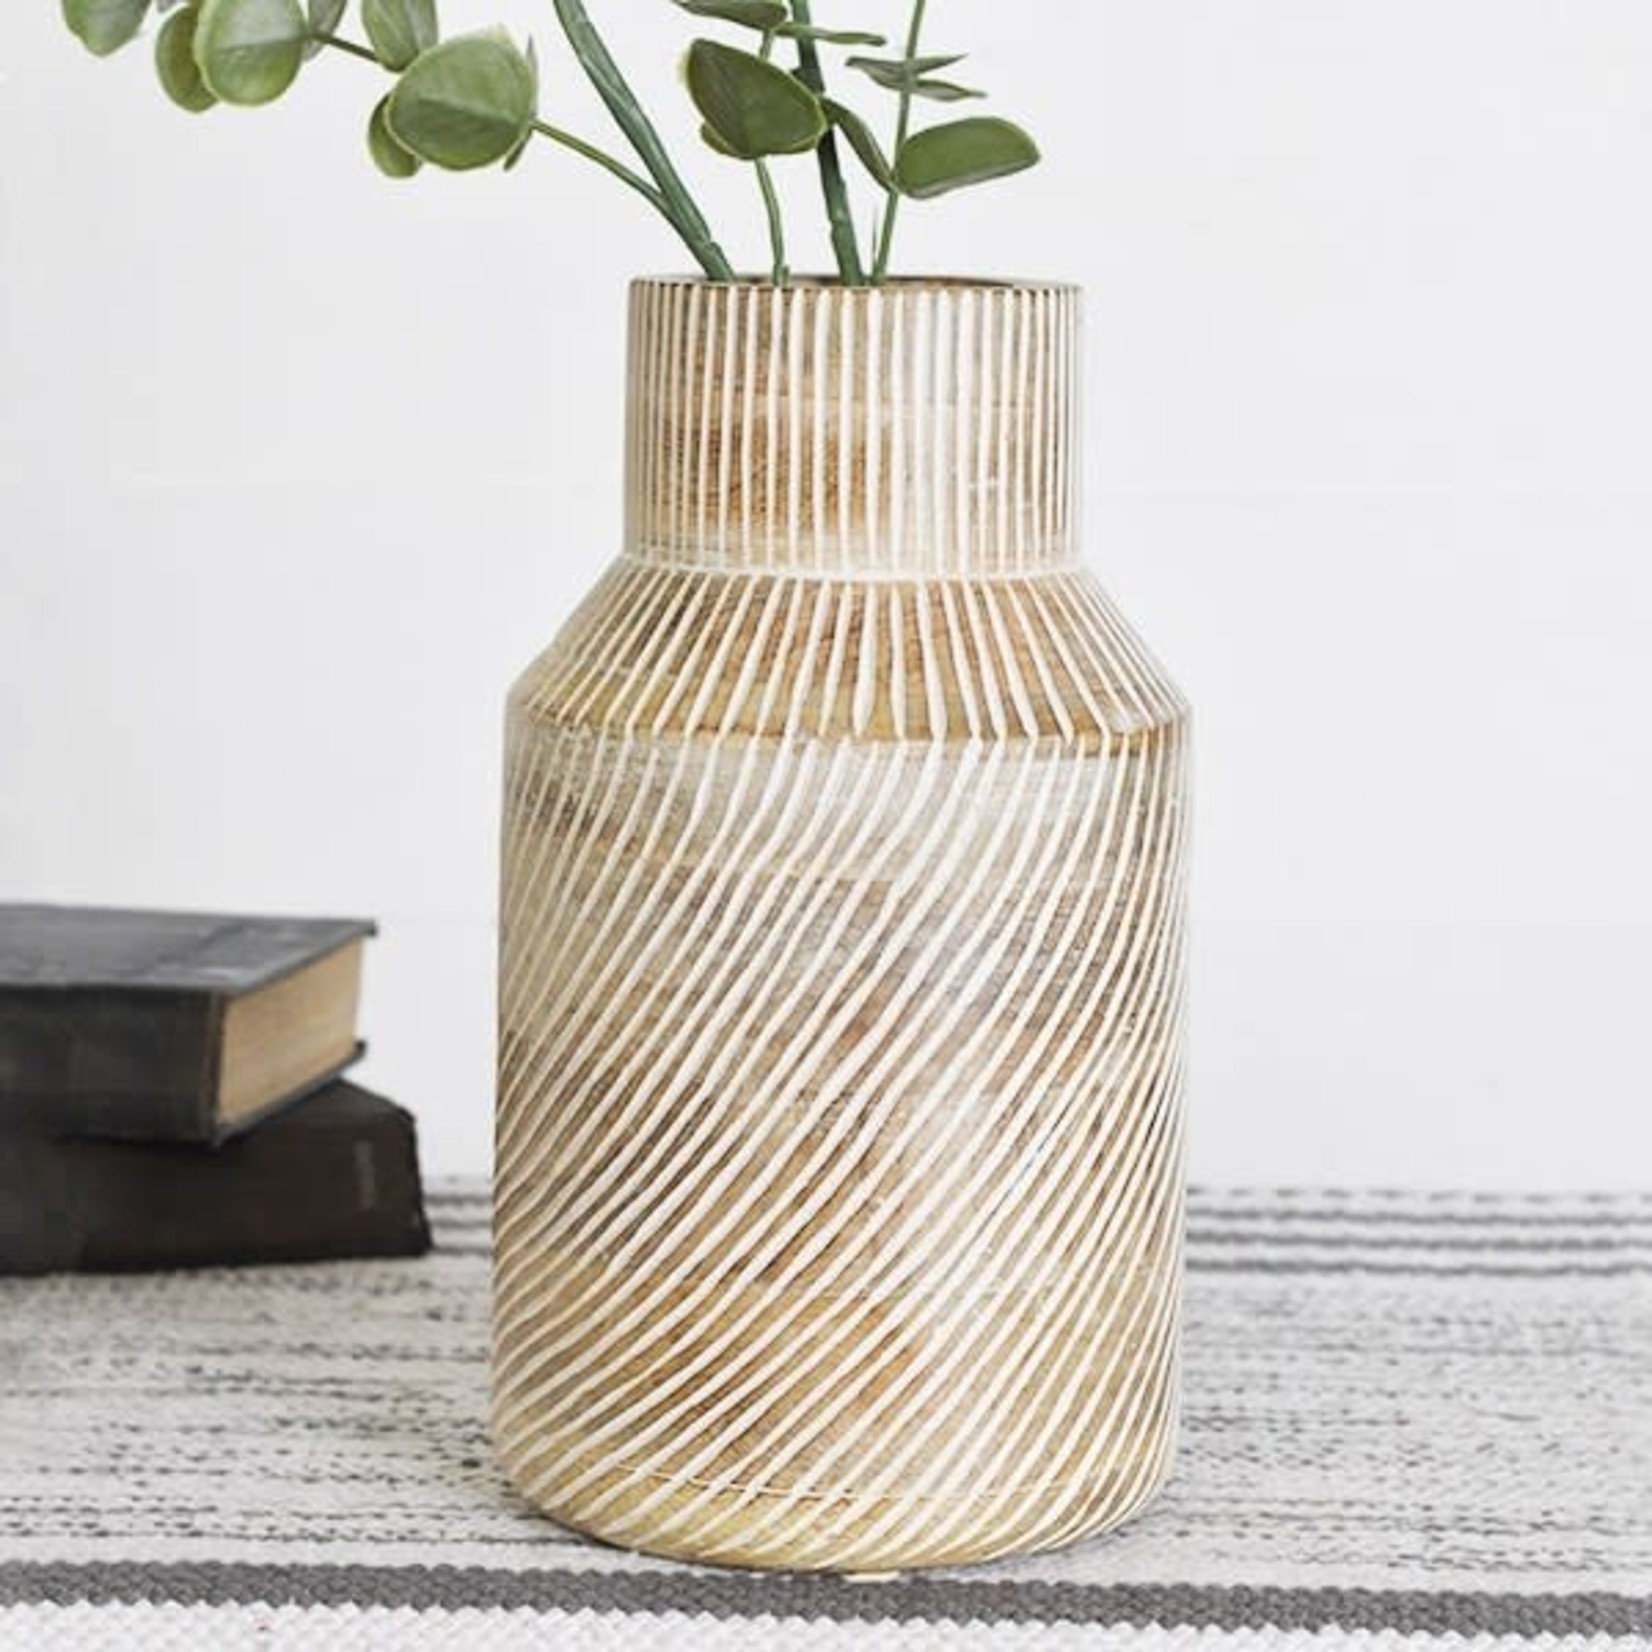 Mickler & Co. Diagonal Striped Wood Vase